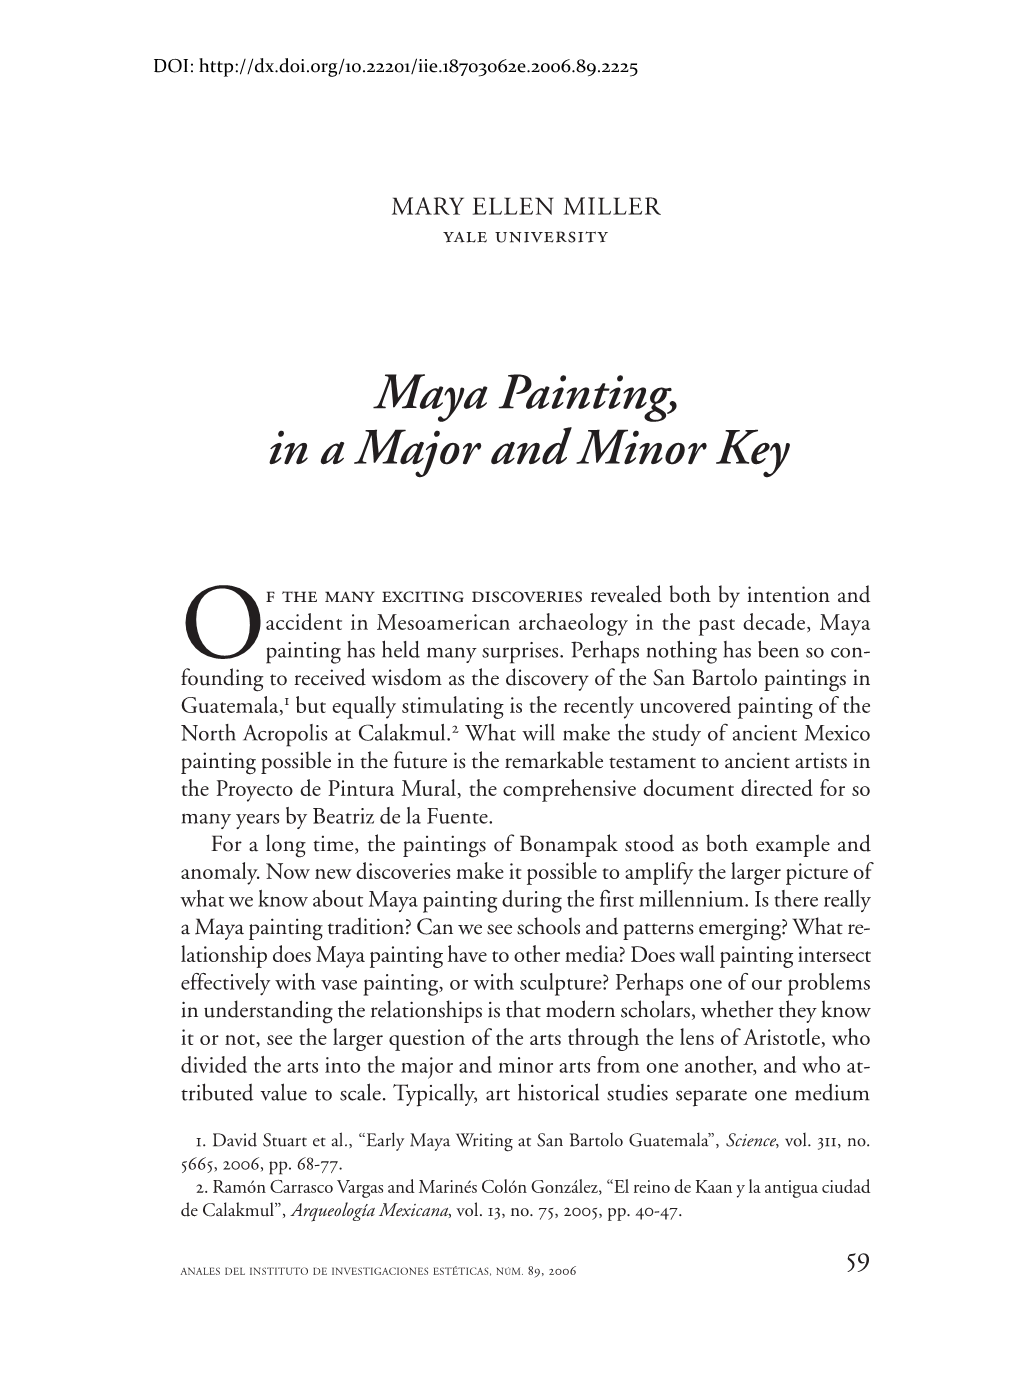 Maya Painting, in a Major and Minor Key